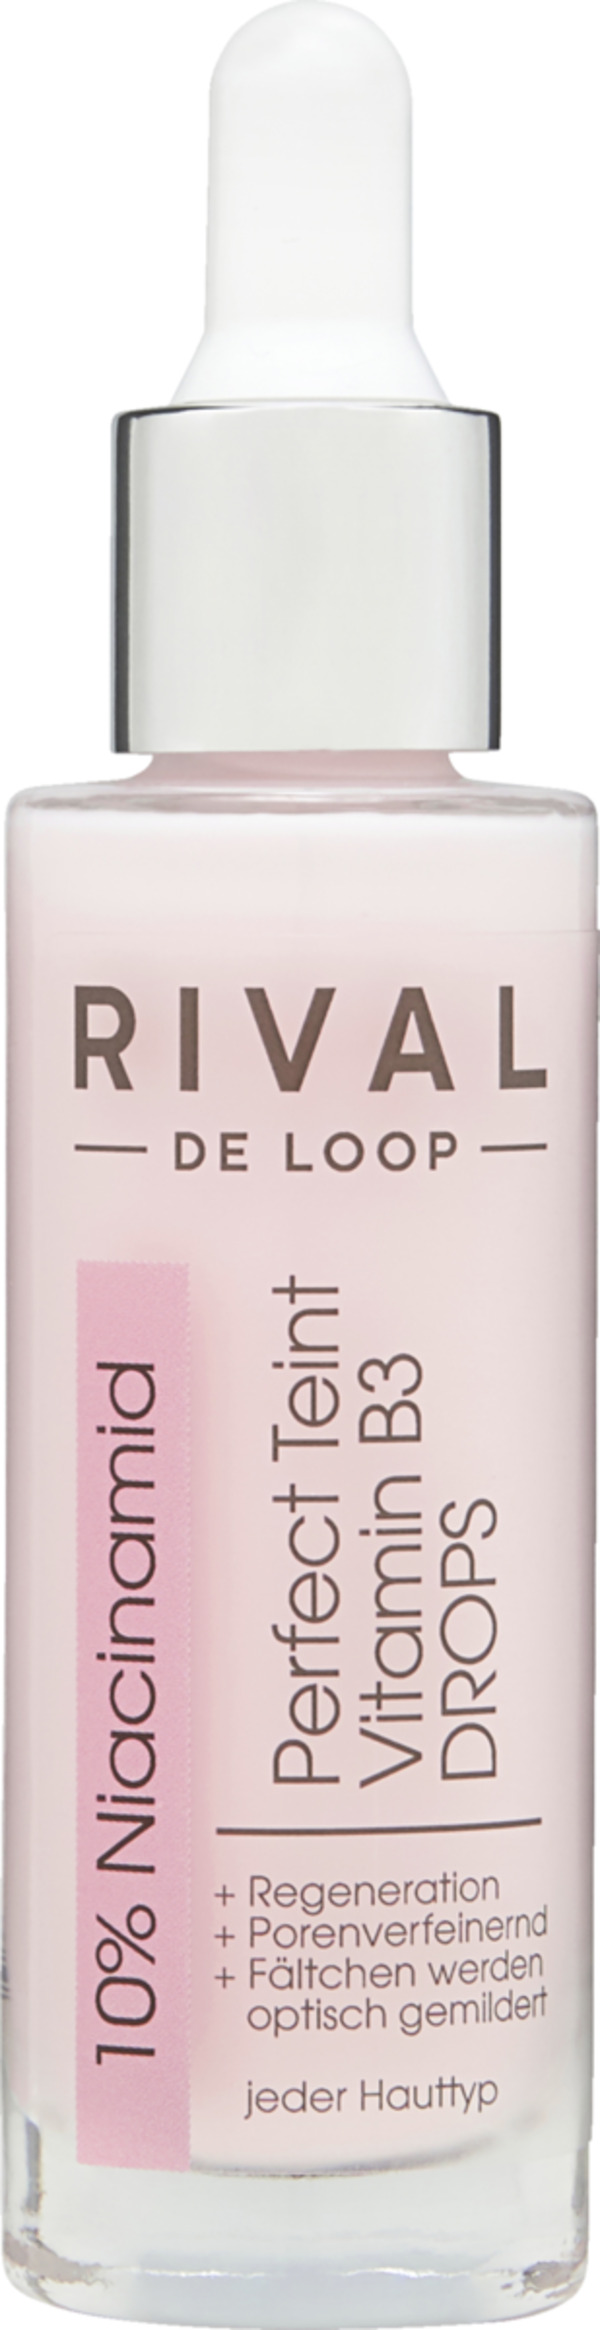 Bild 1 von RIVAL DE LOOP Perfect Teint Vitamin B3 DROPS